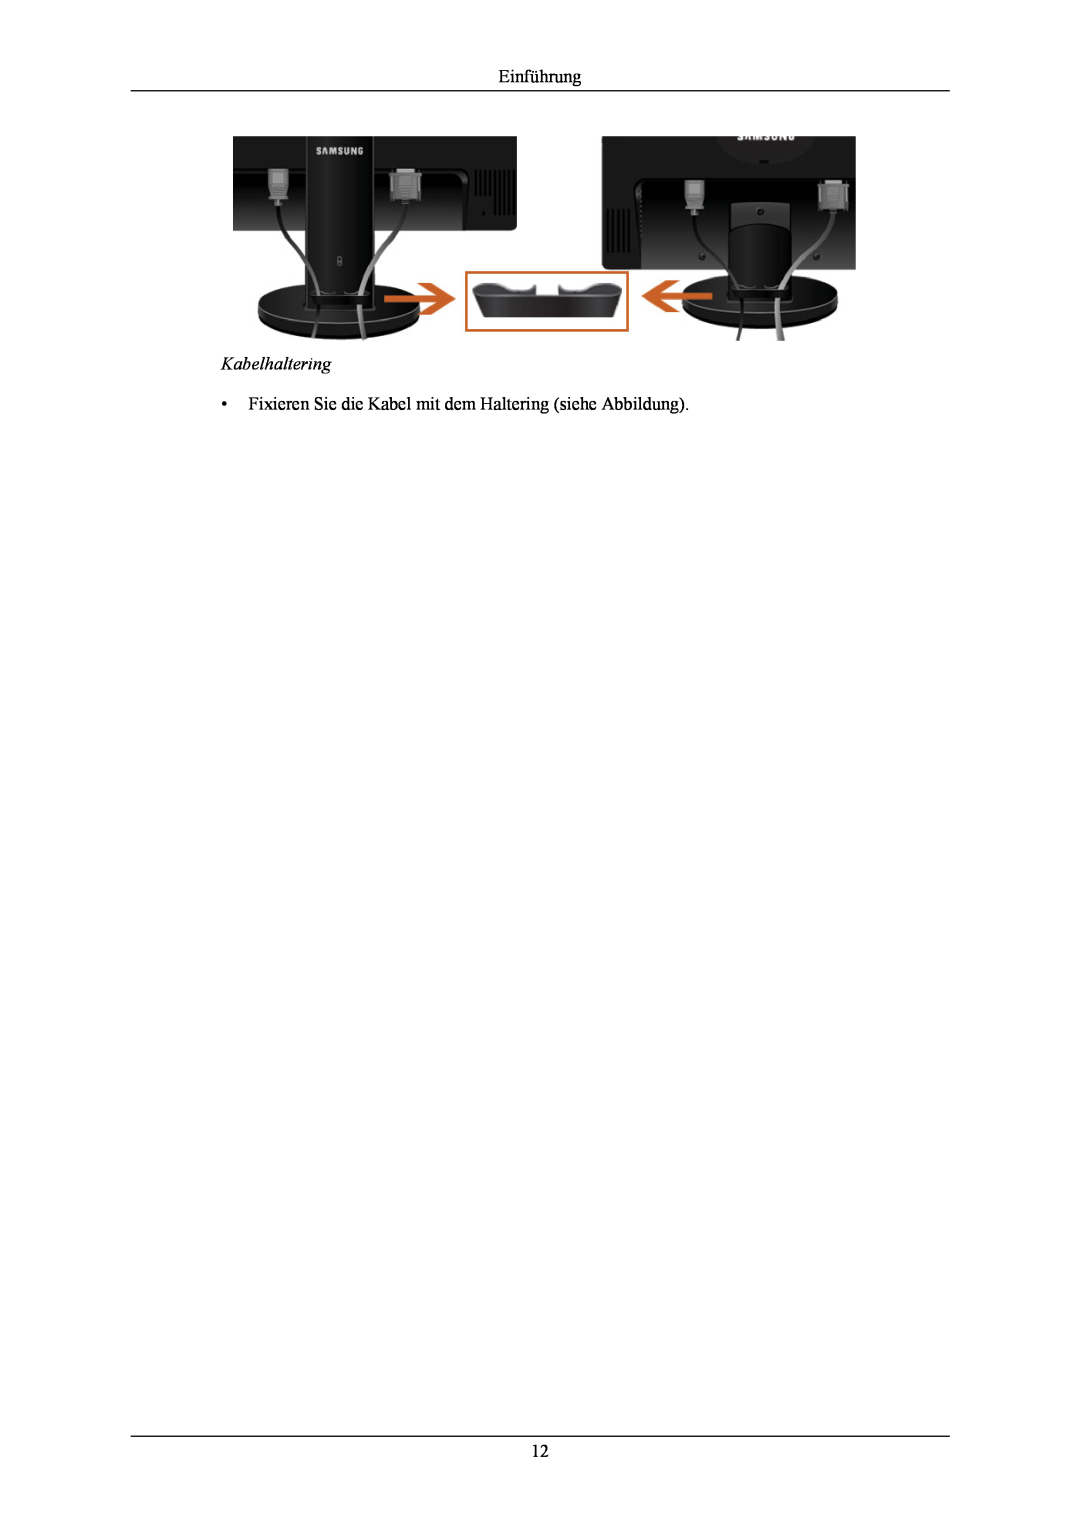 Samsung LS20MYNKSB/EDC, LS20MYNKB/EDC Kabelhaltering, Einführung, Fixieren Sie die Kabel mit dem Haltering siehe Abbildung 